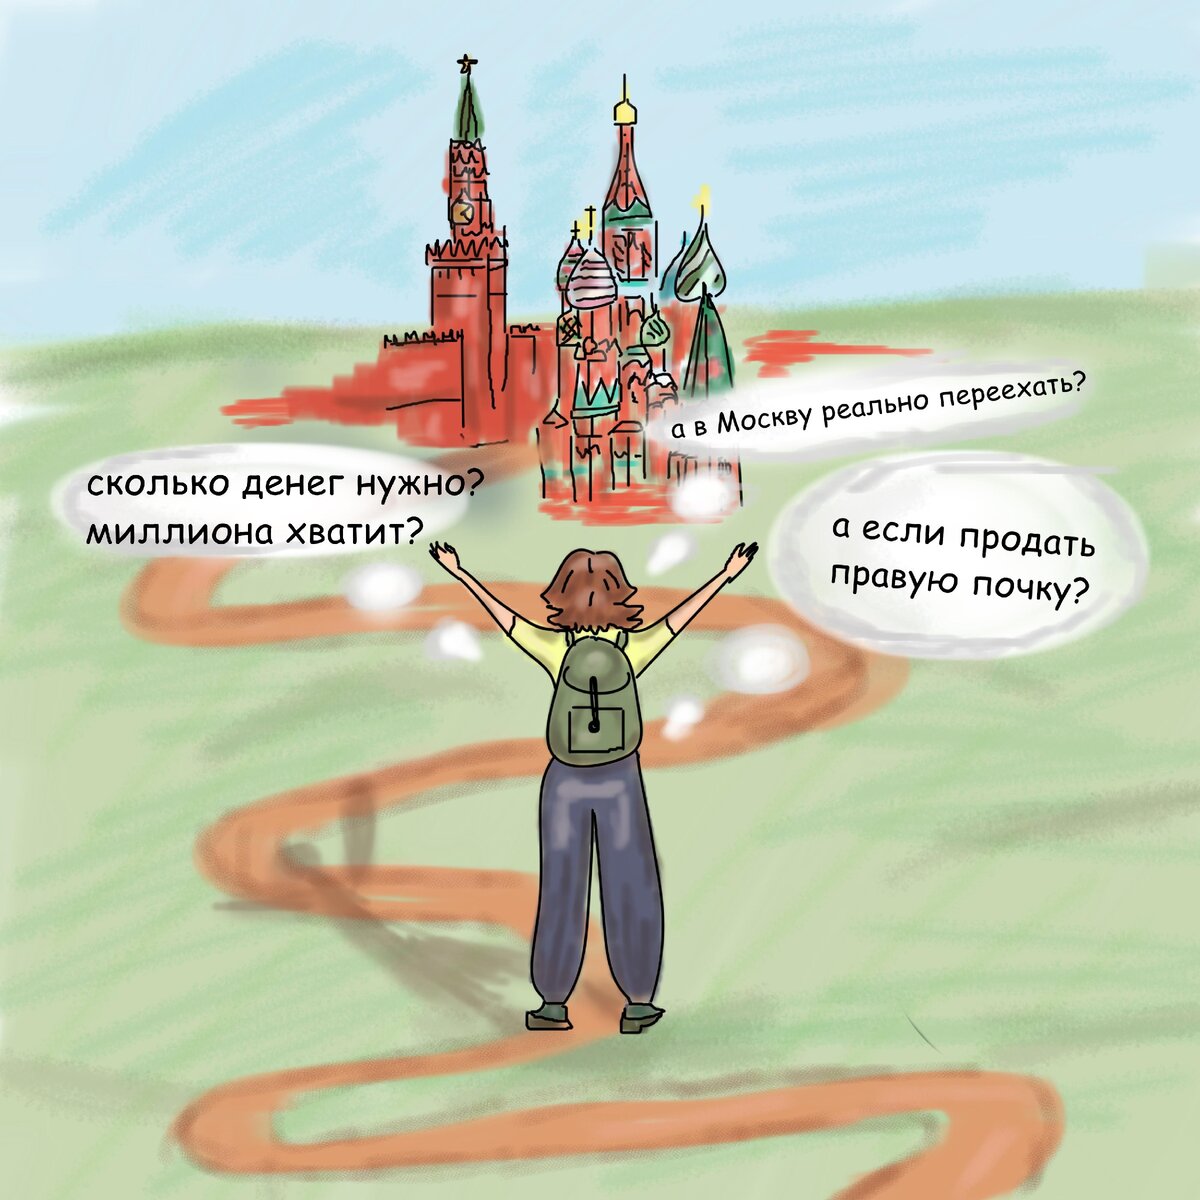 сколько стоит переезд в Москву
Рисунок: моё